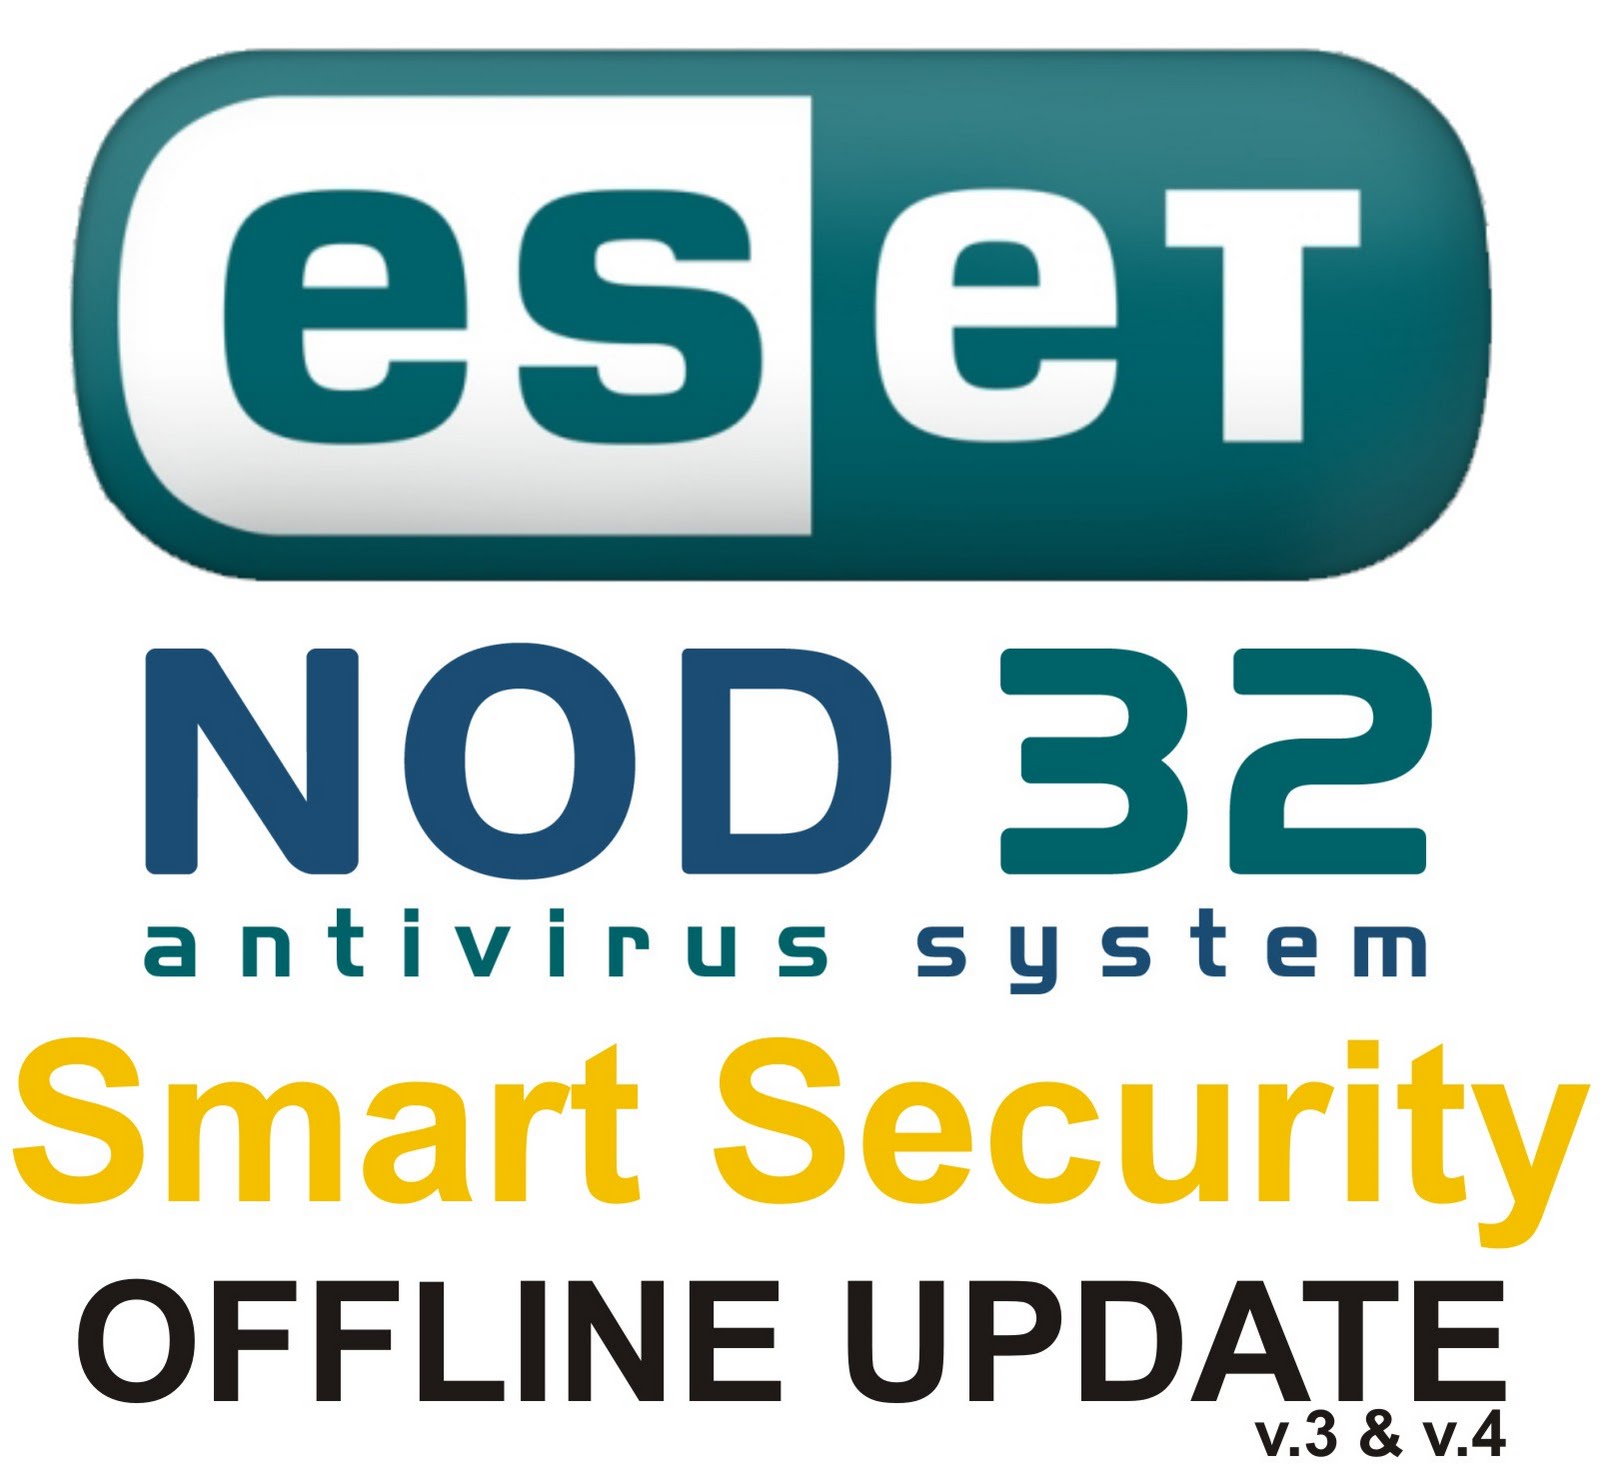 НОД 32 антивирус оффлайн обновления базы. Eset offline